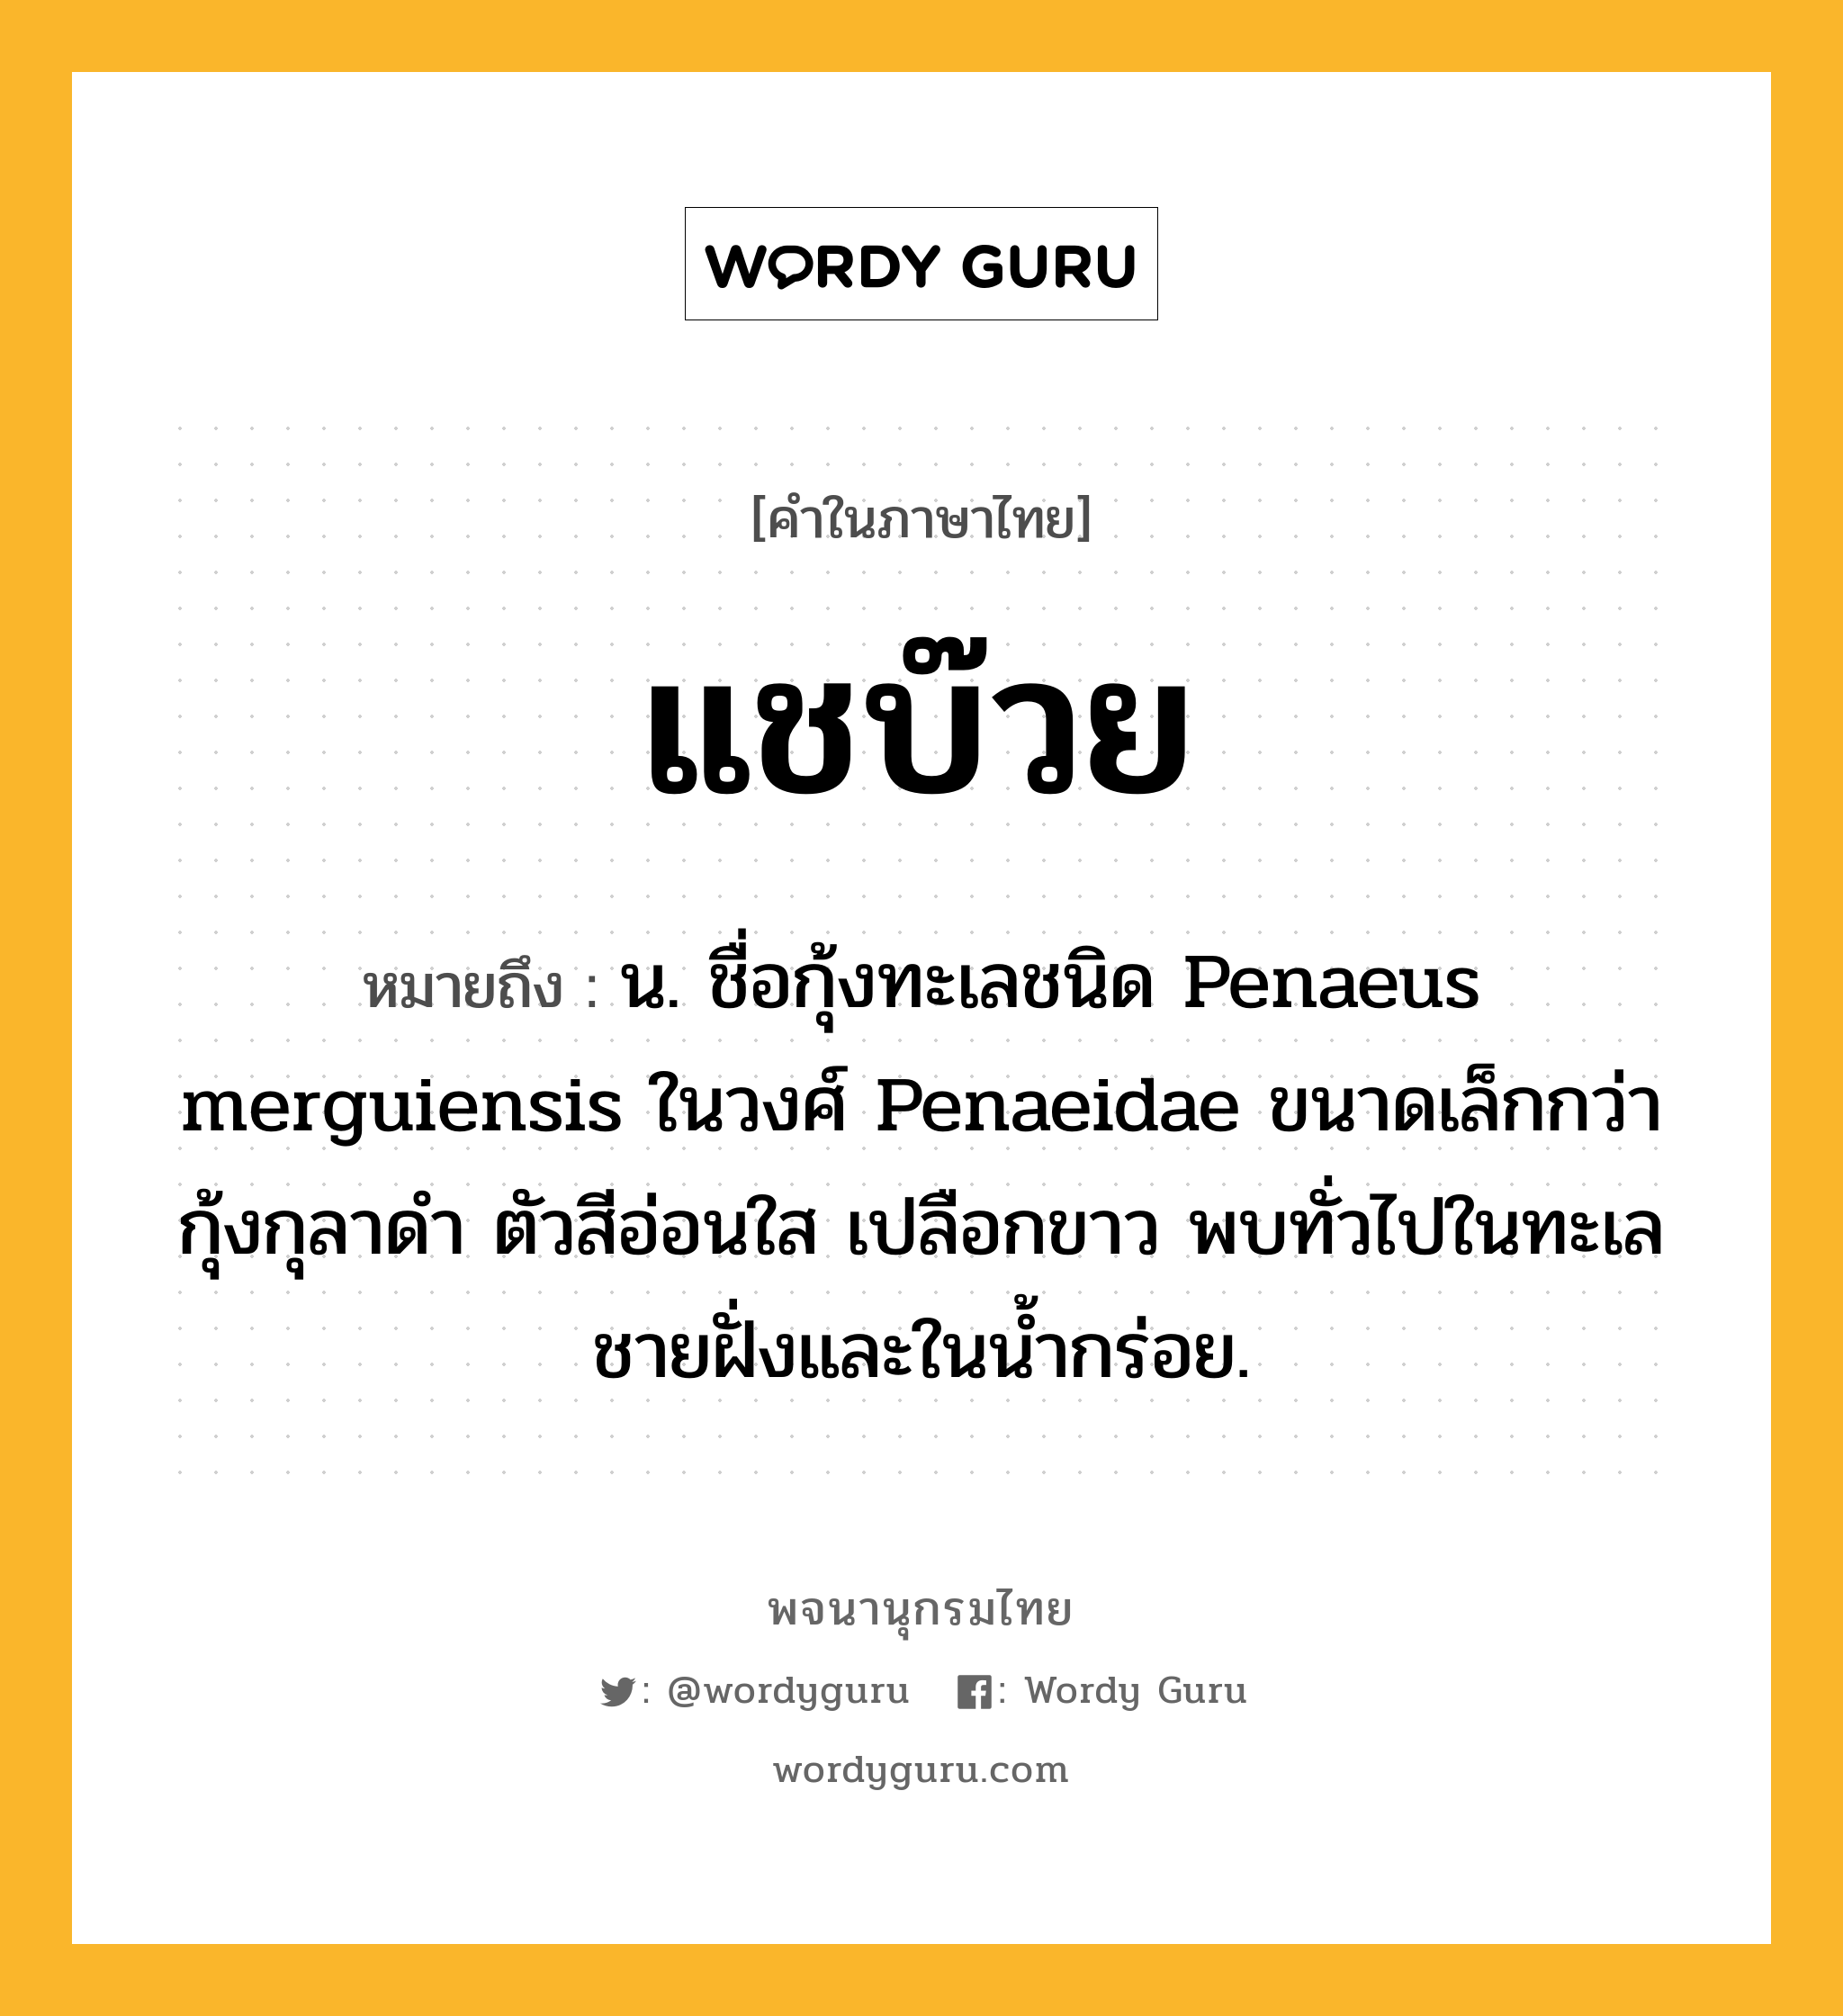 แชบ๊วย ความหมาย หมายถึงอะไร?, คำในภาษาไทย แชบ๊วย หมายถึง น. ชื่อกุ้งทะเลชนิด Penaeus merguiensis ในวงศ์ Penaeidae ขนาดเล็กกว่ากุ้งกุลาดํา ตัวสีอ่อนใส เปลือกขาว พบทั่วไปในทะเลชายฝั่งและในนํ้ากร่อย.